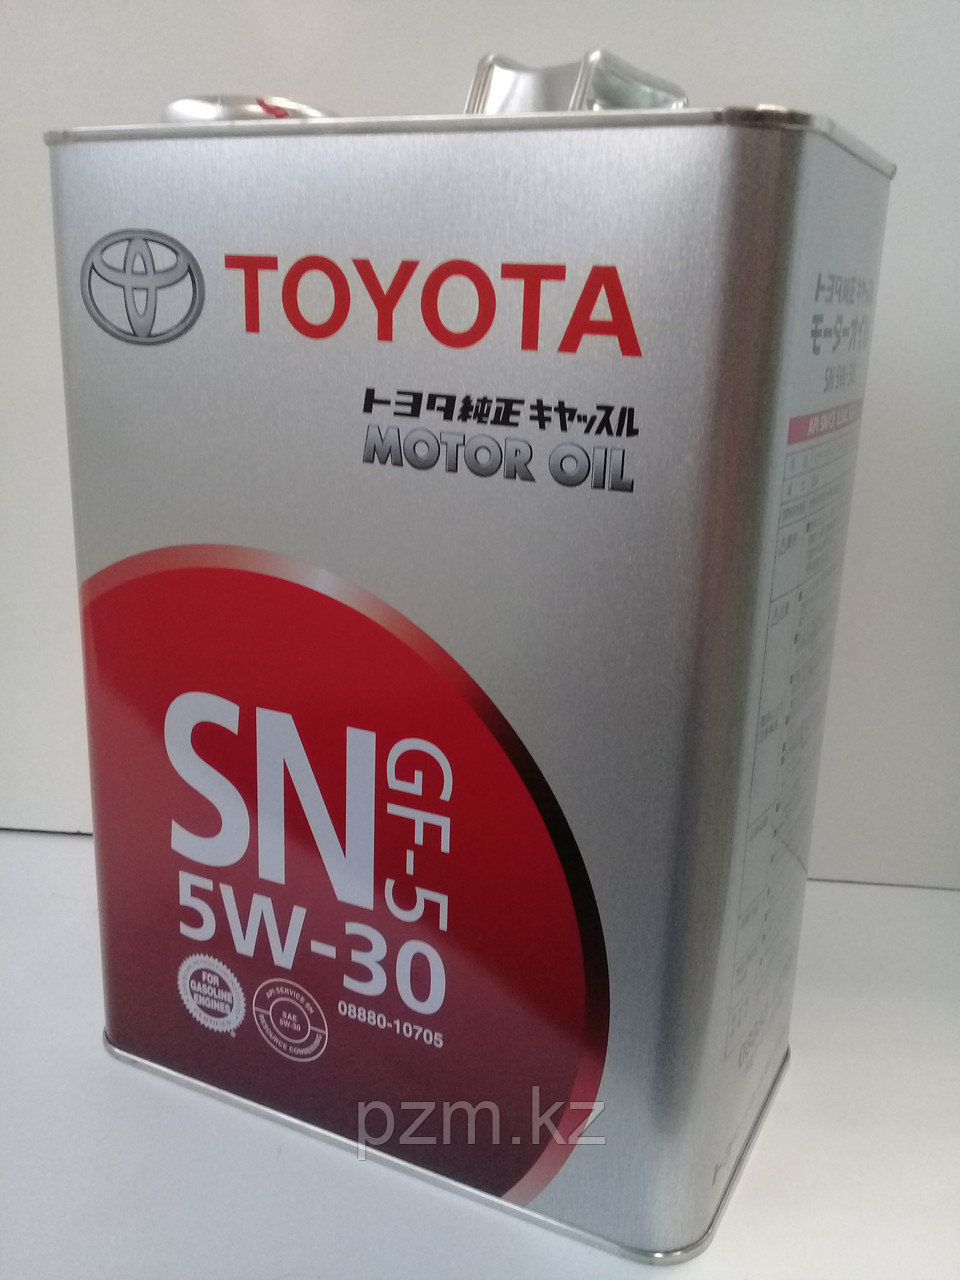 Замена масла в двигателе Toyota  Premio (масло + фильтр)  оригинальное моторное масло тойота 5W30